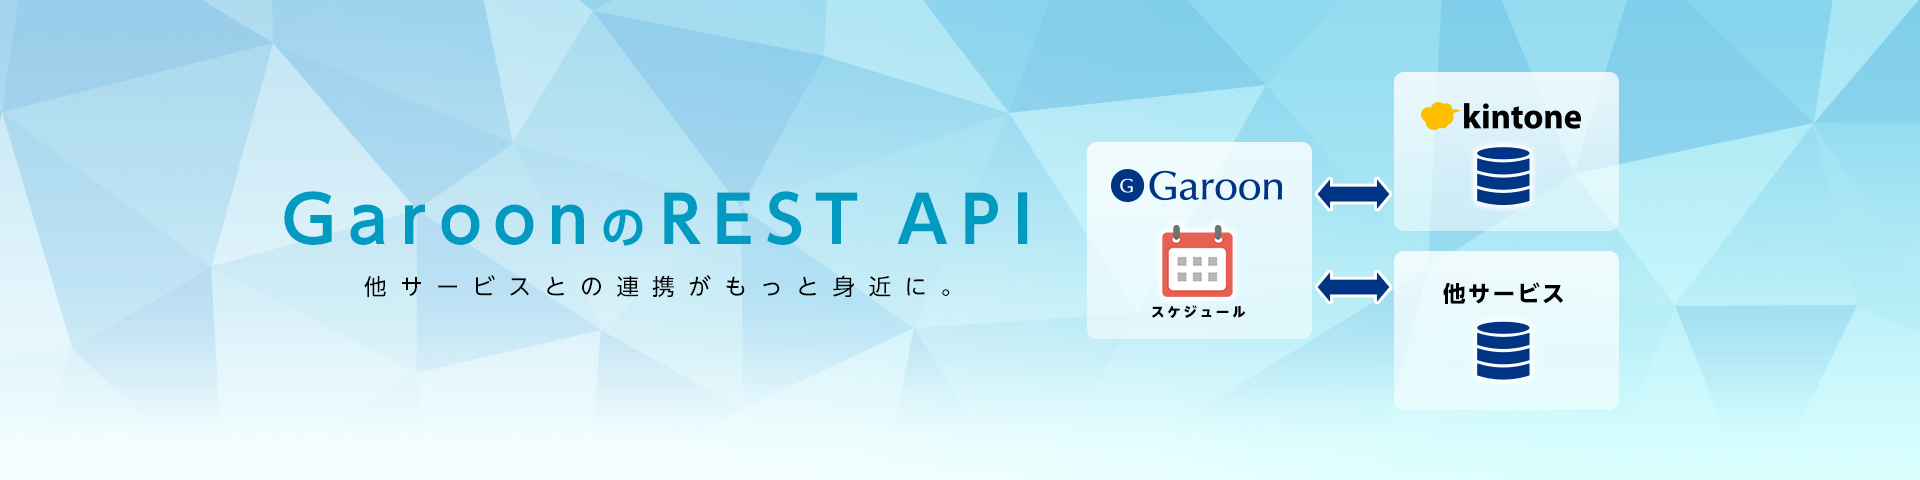 https://enterprise.cybozu.co.jp/banner-GaroonREST_API%20%281%29.png